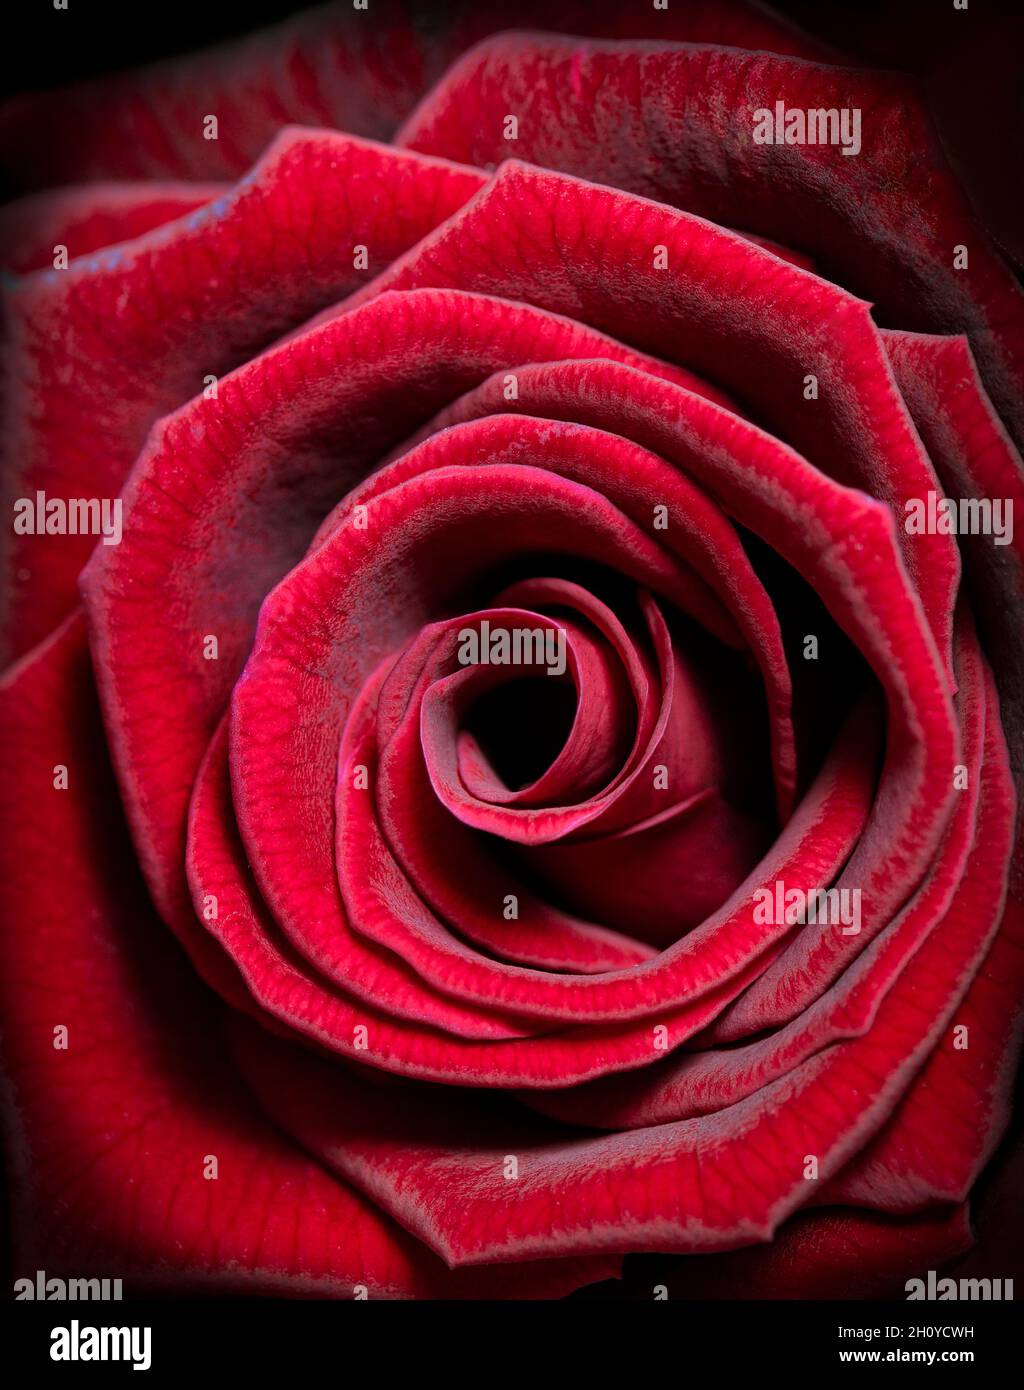 Gros plan sur une magnifique rose veloutée de couleur rouge Banque D'Images